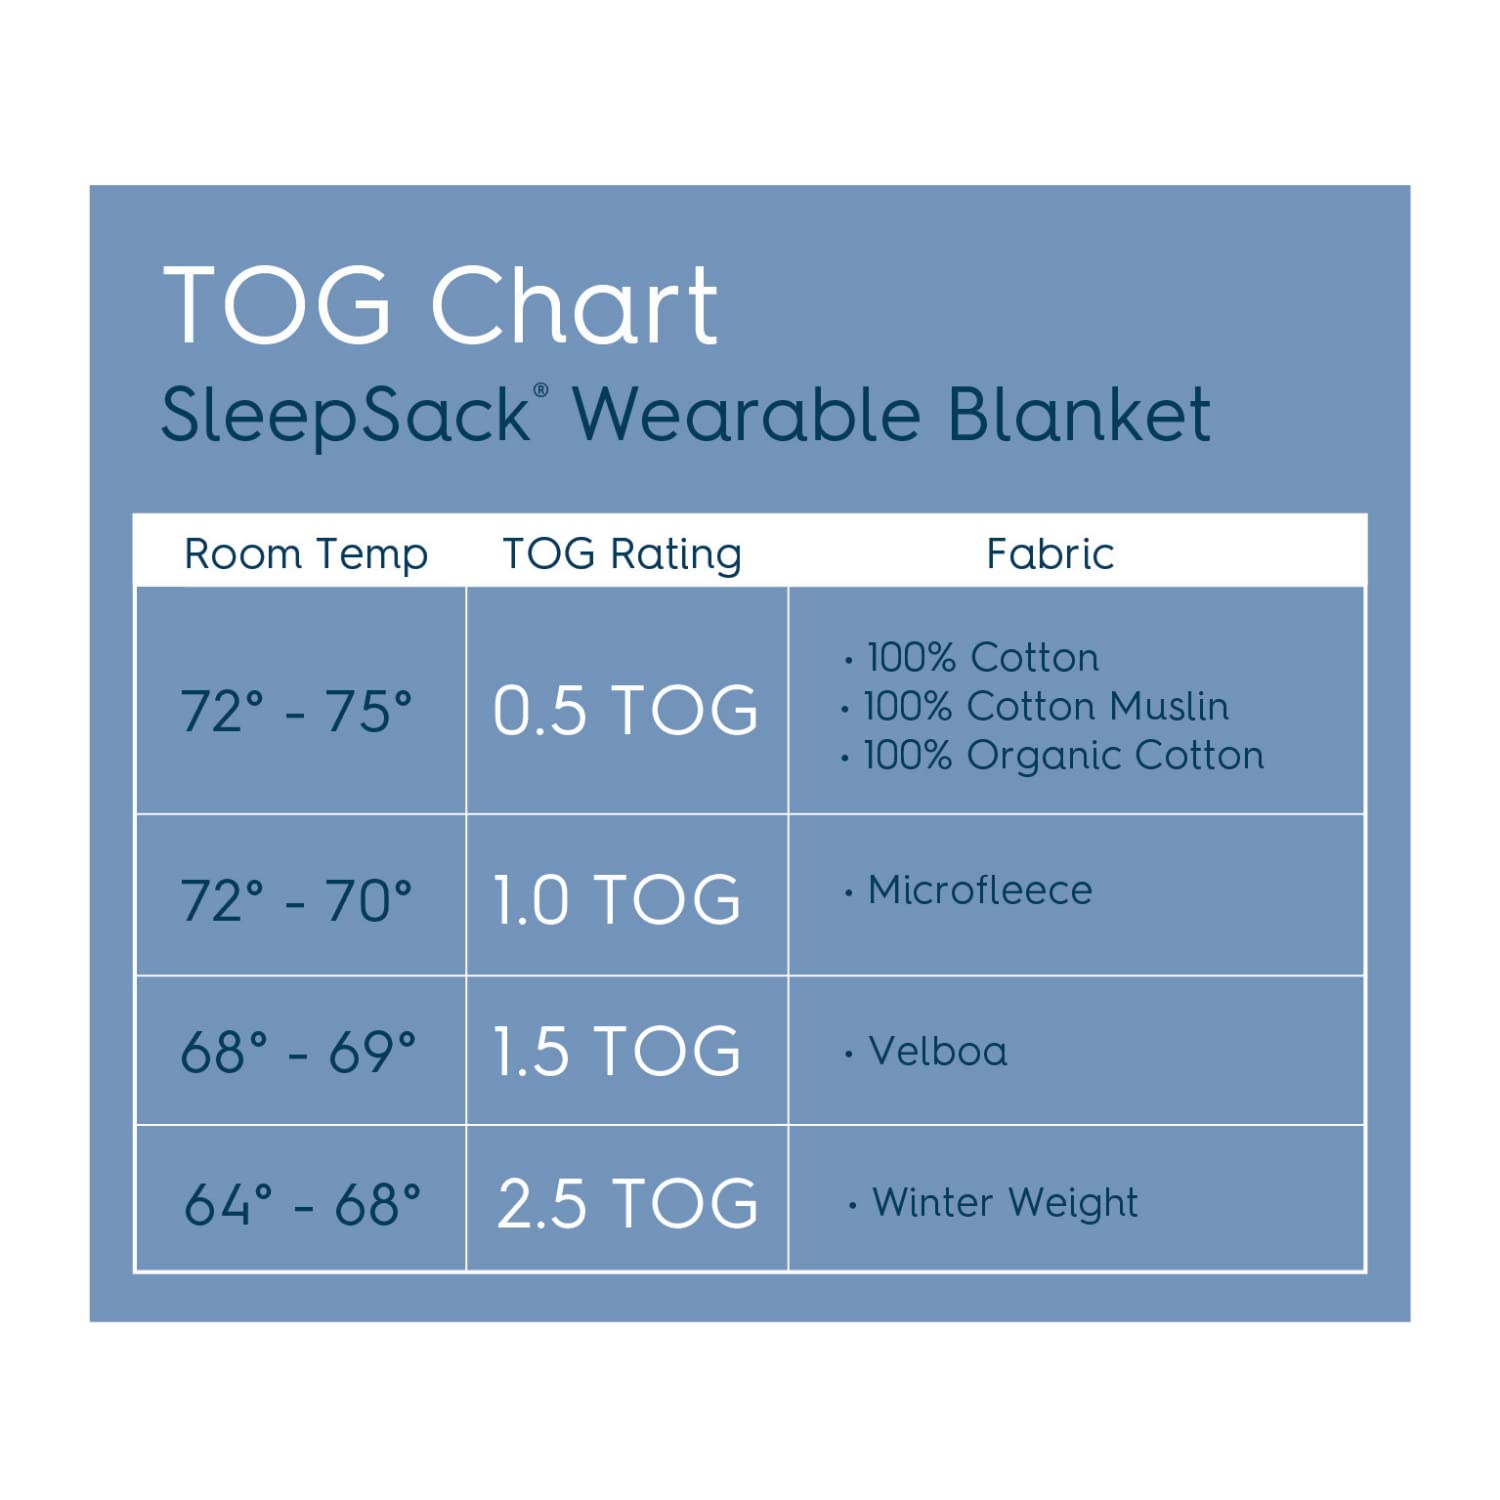 HALO Sleepsack Micro-Fleece Wearable Blanket, TOG 0.5, Cream, Small